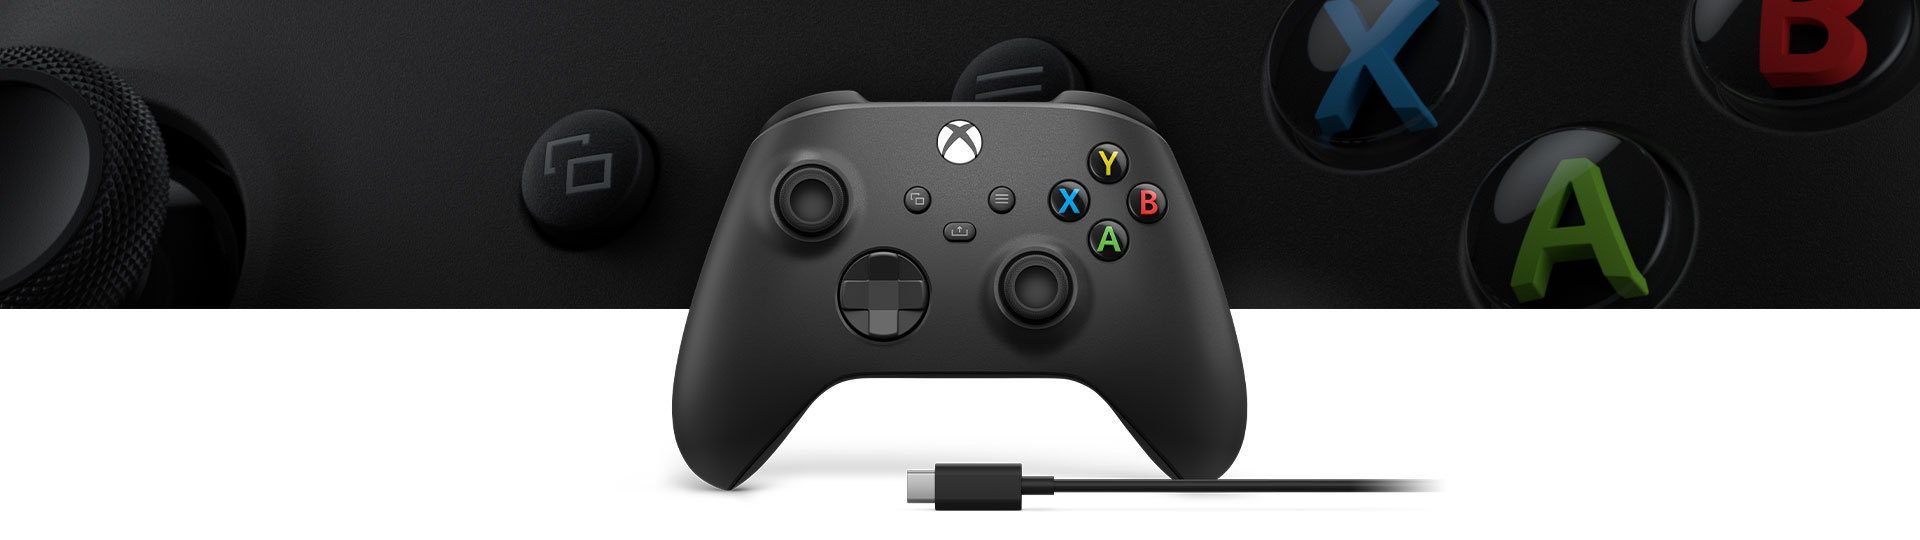 Xbox draadloze controller + USB-C®-kabel met een close-up van het structuuroppervlak van de controller